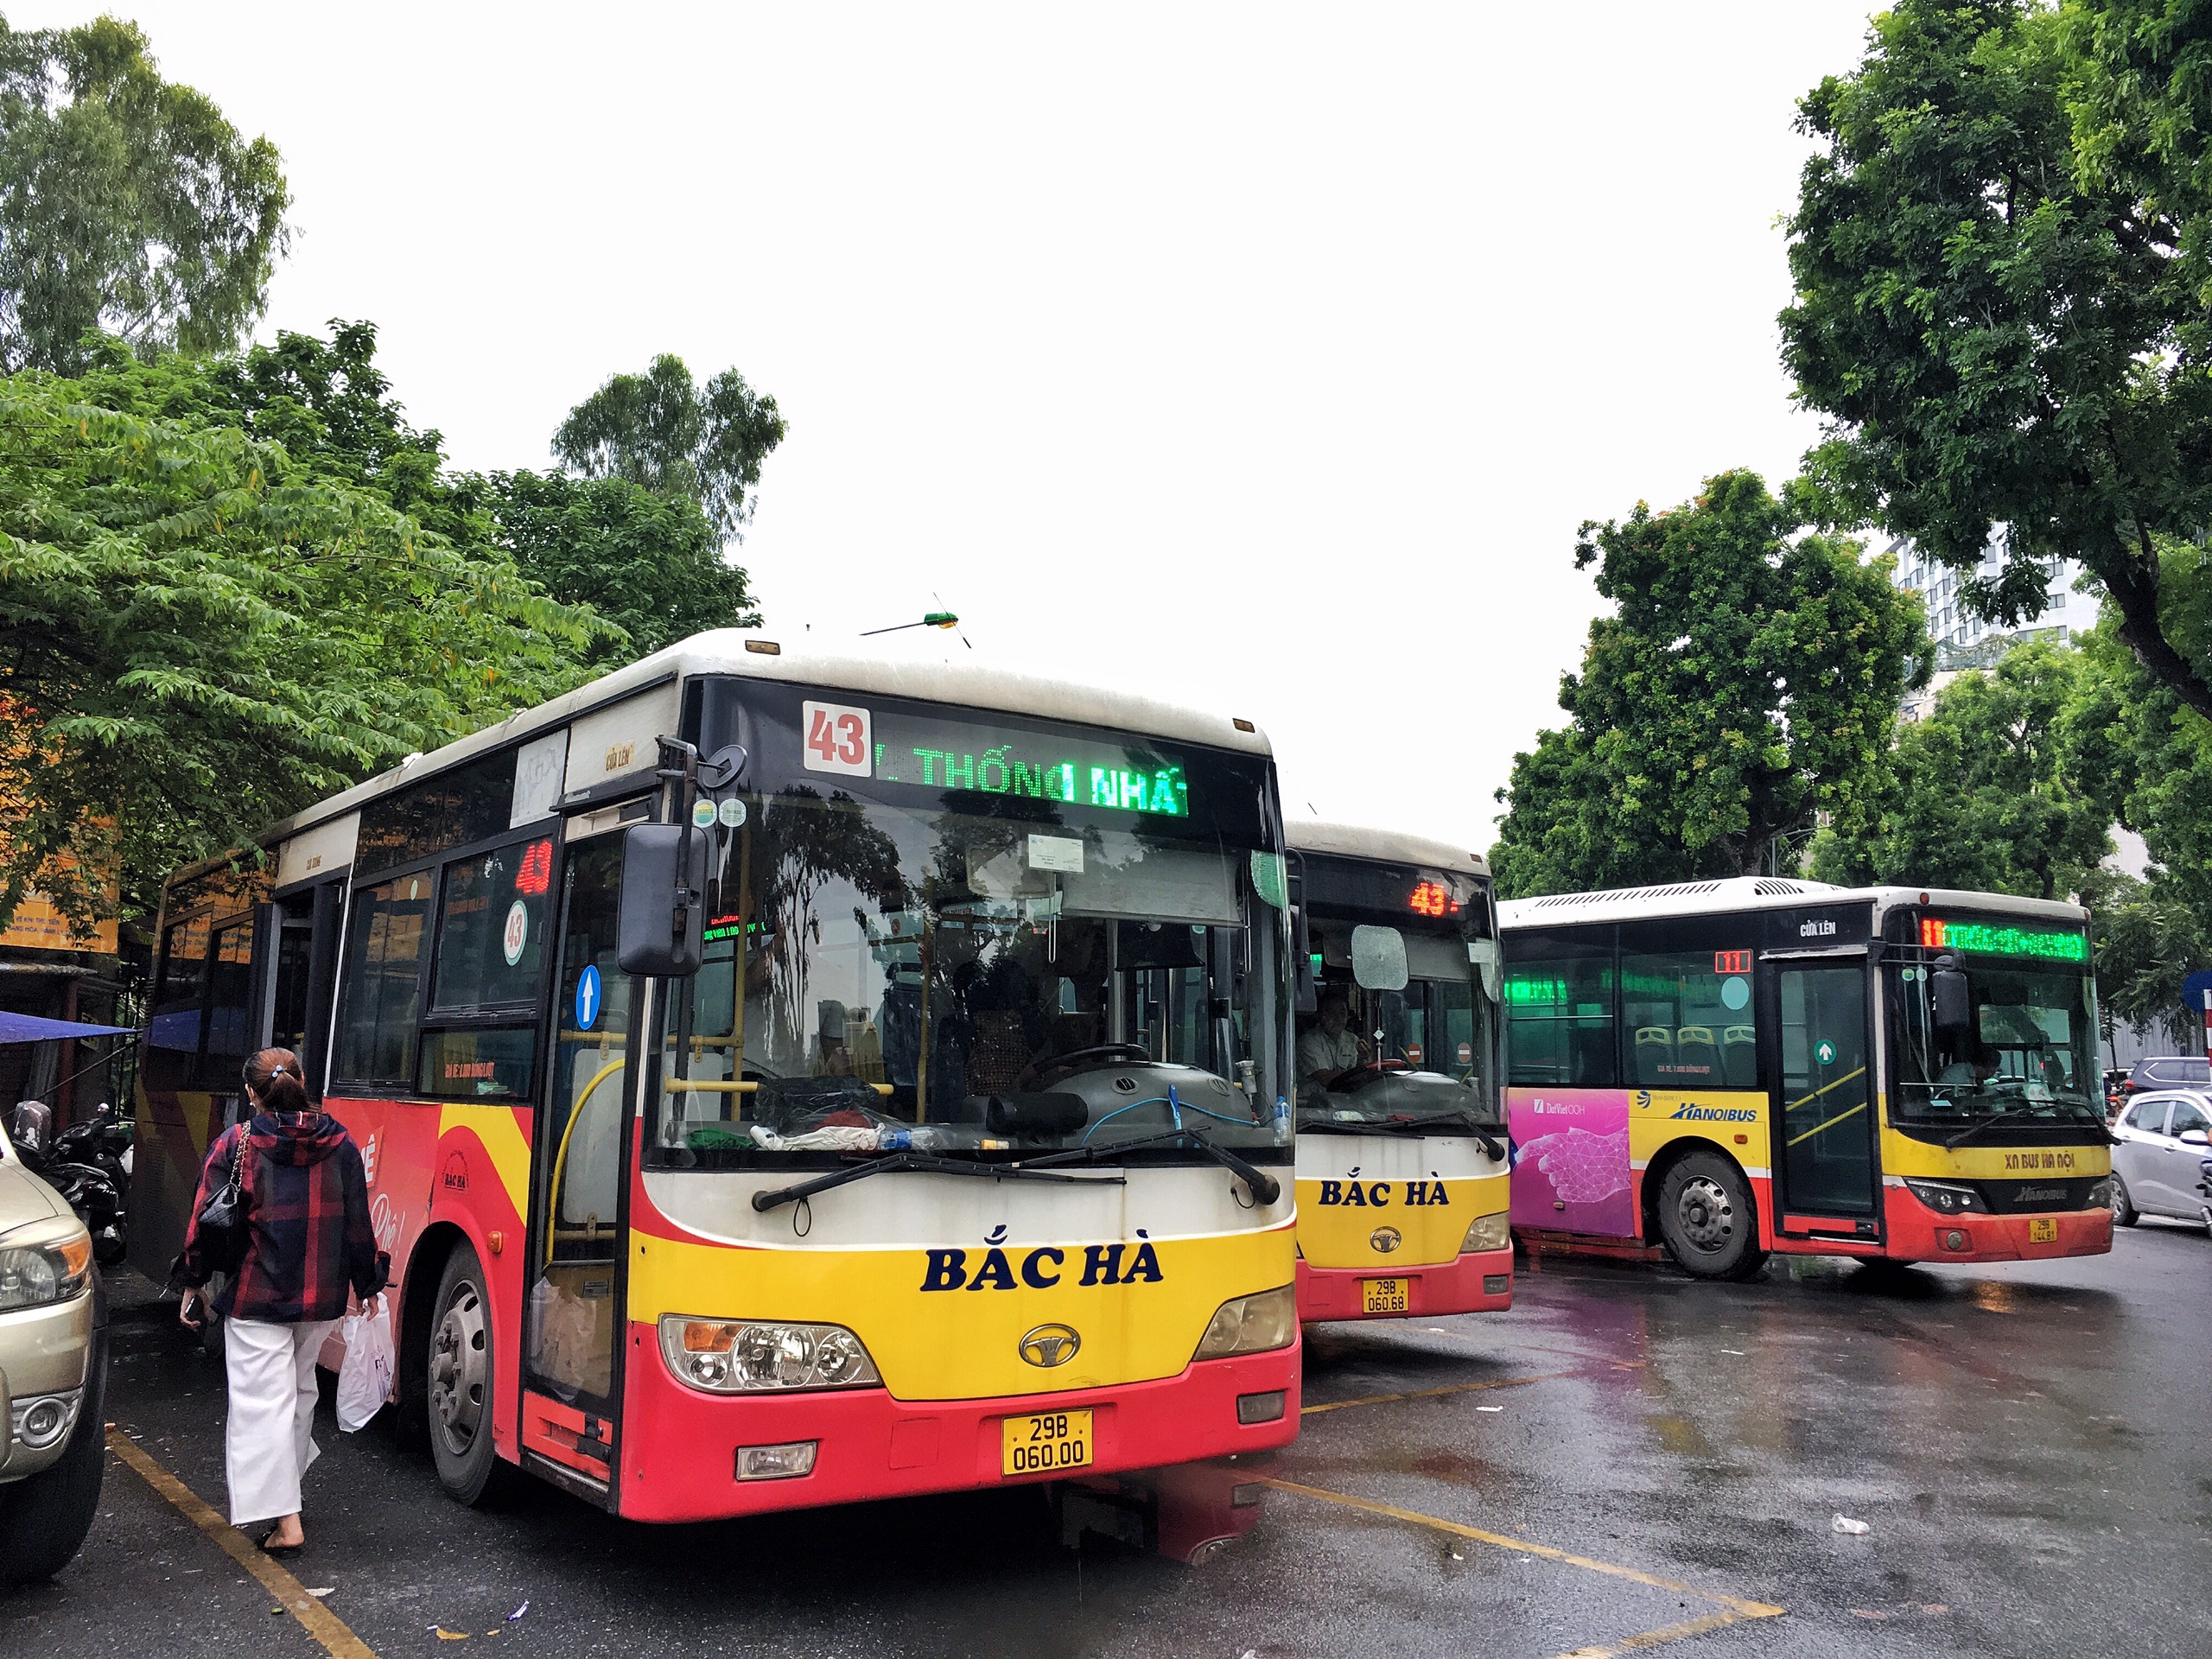 Hà Nội cho phép chỉ định thầu thay thế loạt tuyến buýt của Bắc Hà - 1